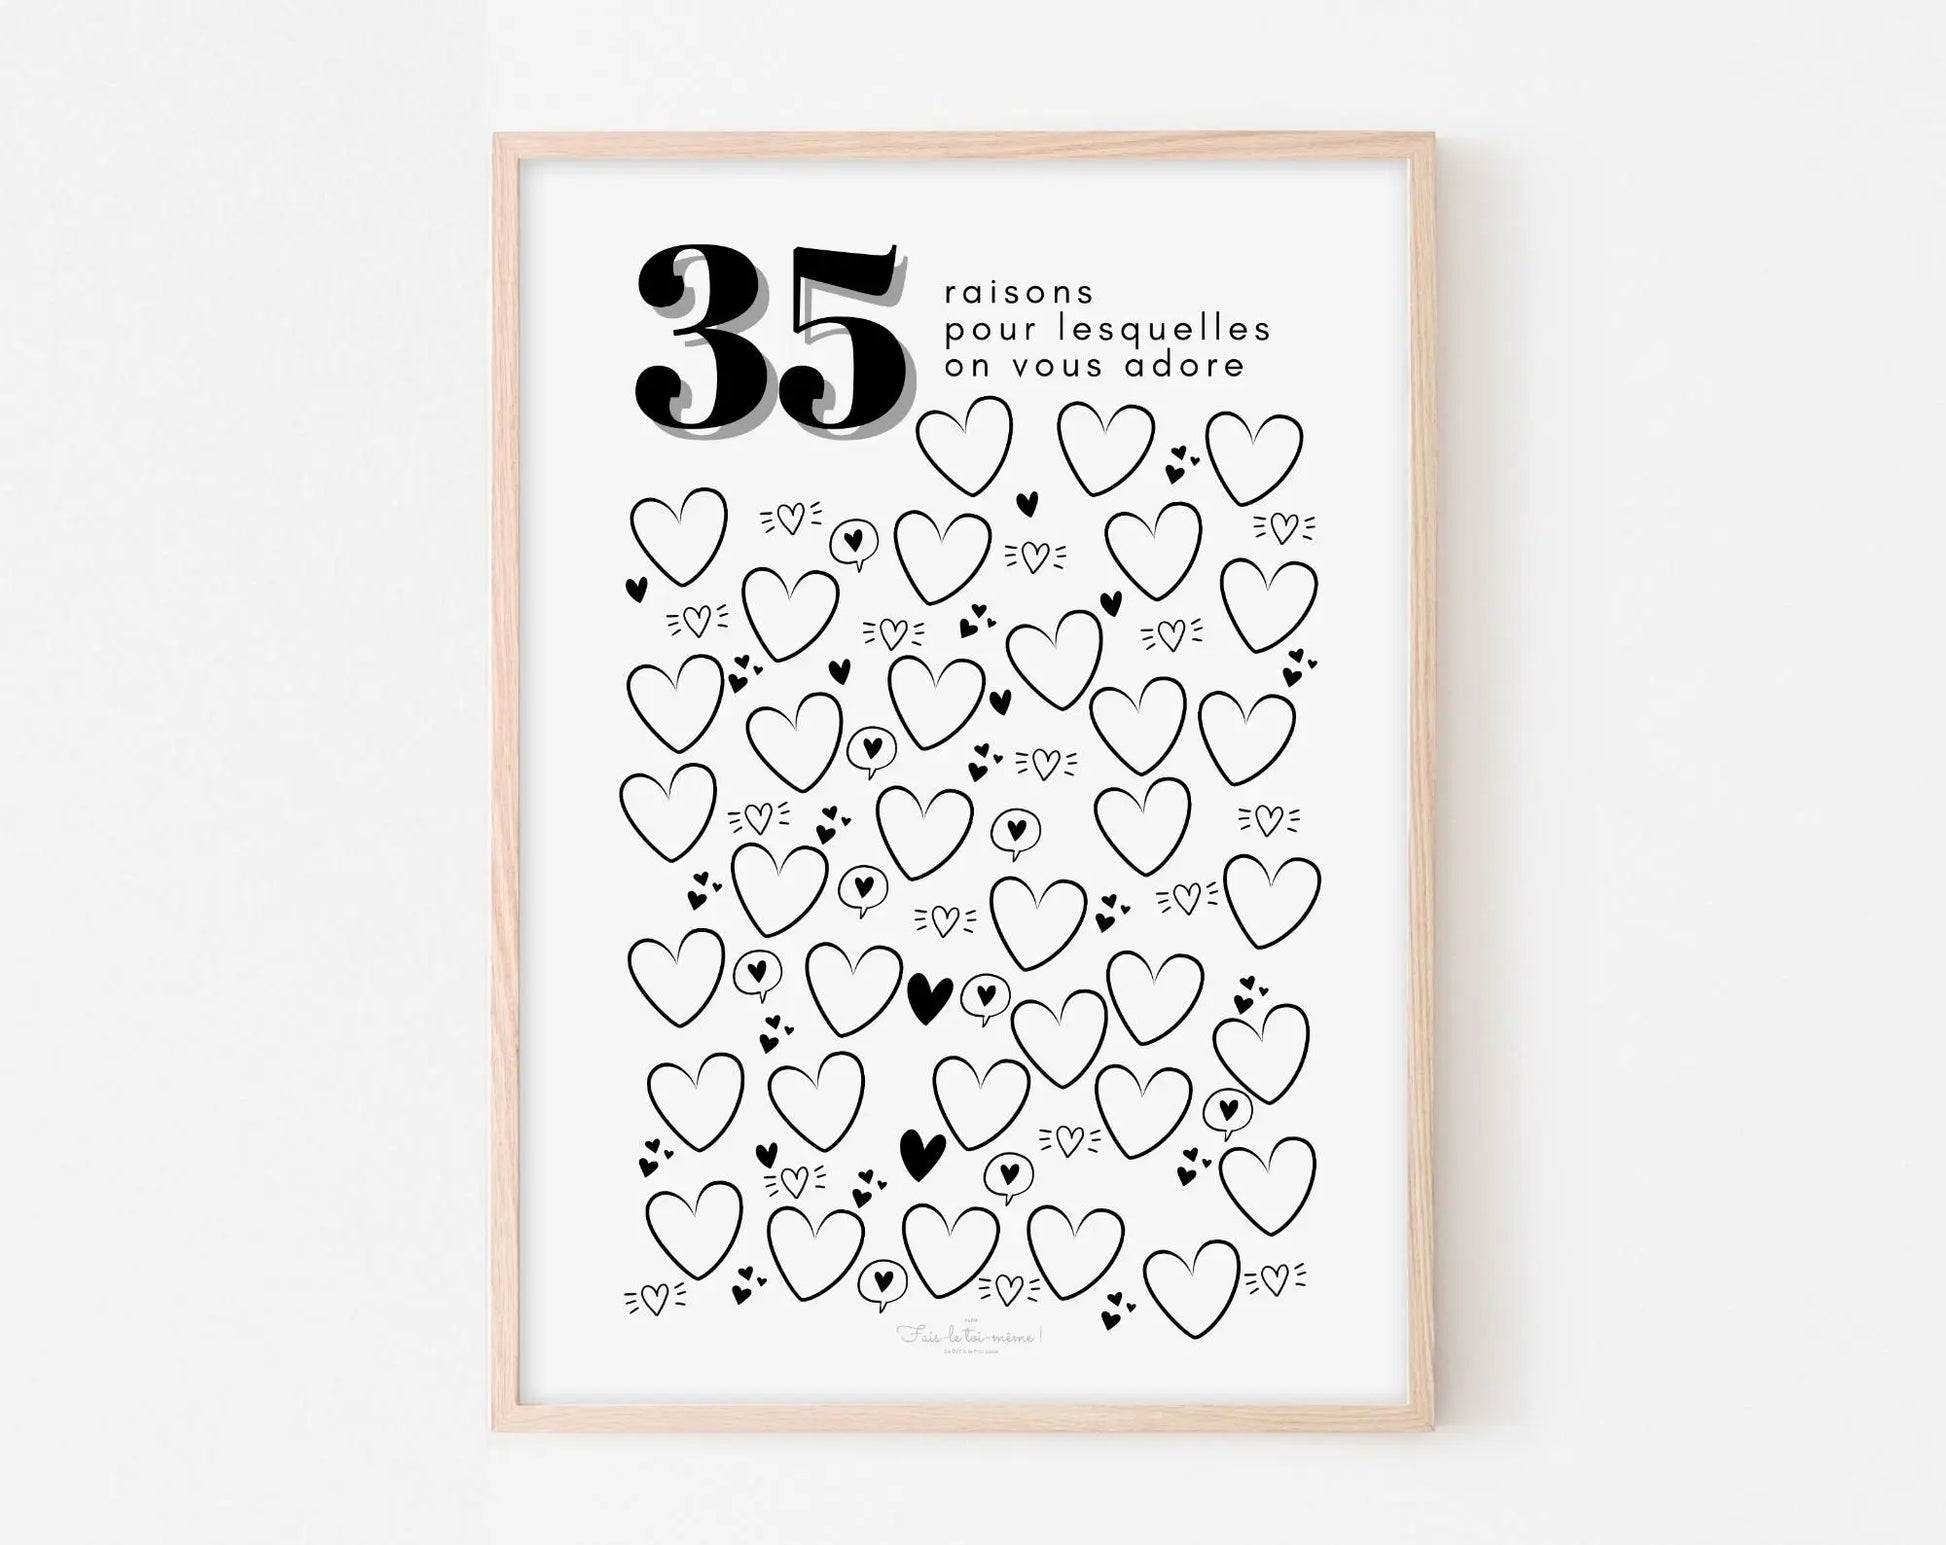 Affiche couple 35 raisons pour lesquelles on vous adore - Anniversaire 35 ans FLTMfrance